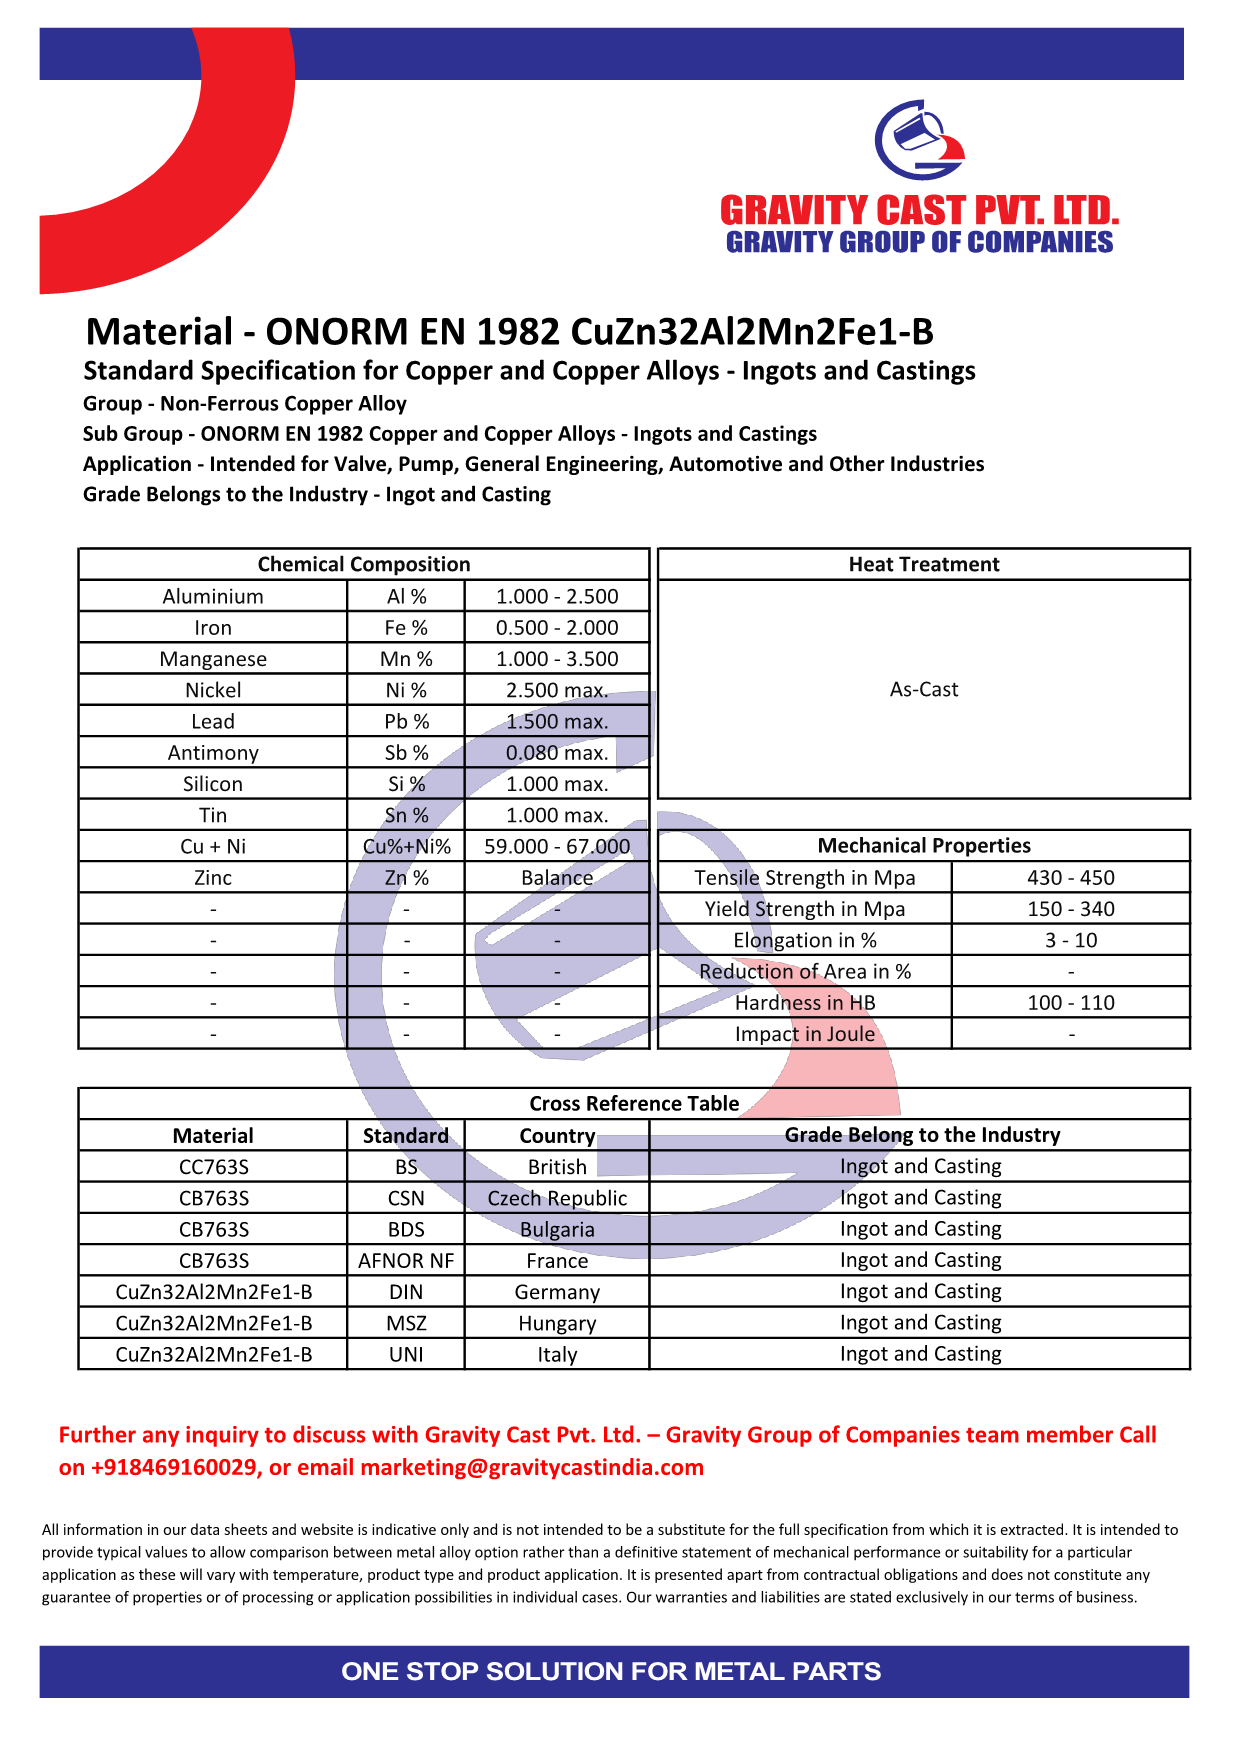 ONORM EN 1982 CuZn32Al2Mn2Fe1-B.pdf